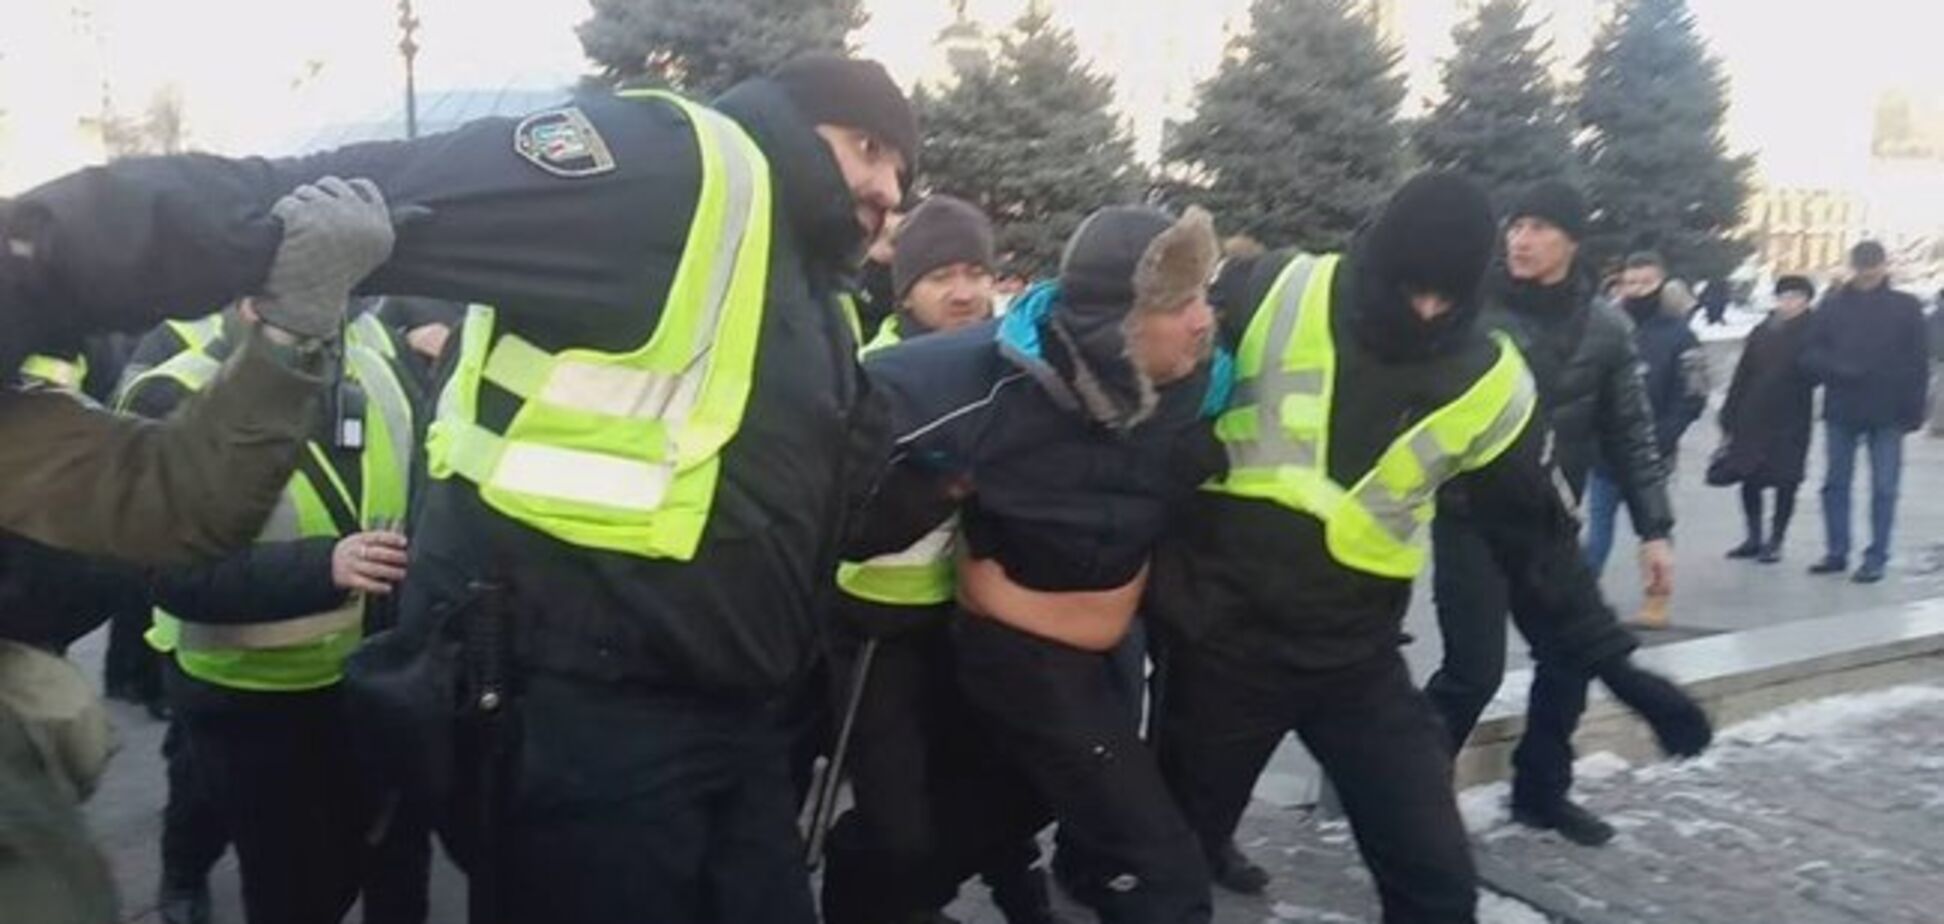 В центре Киева заковали в наручники помощника Савченко: фото и видео жестких столкновений